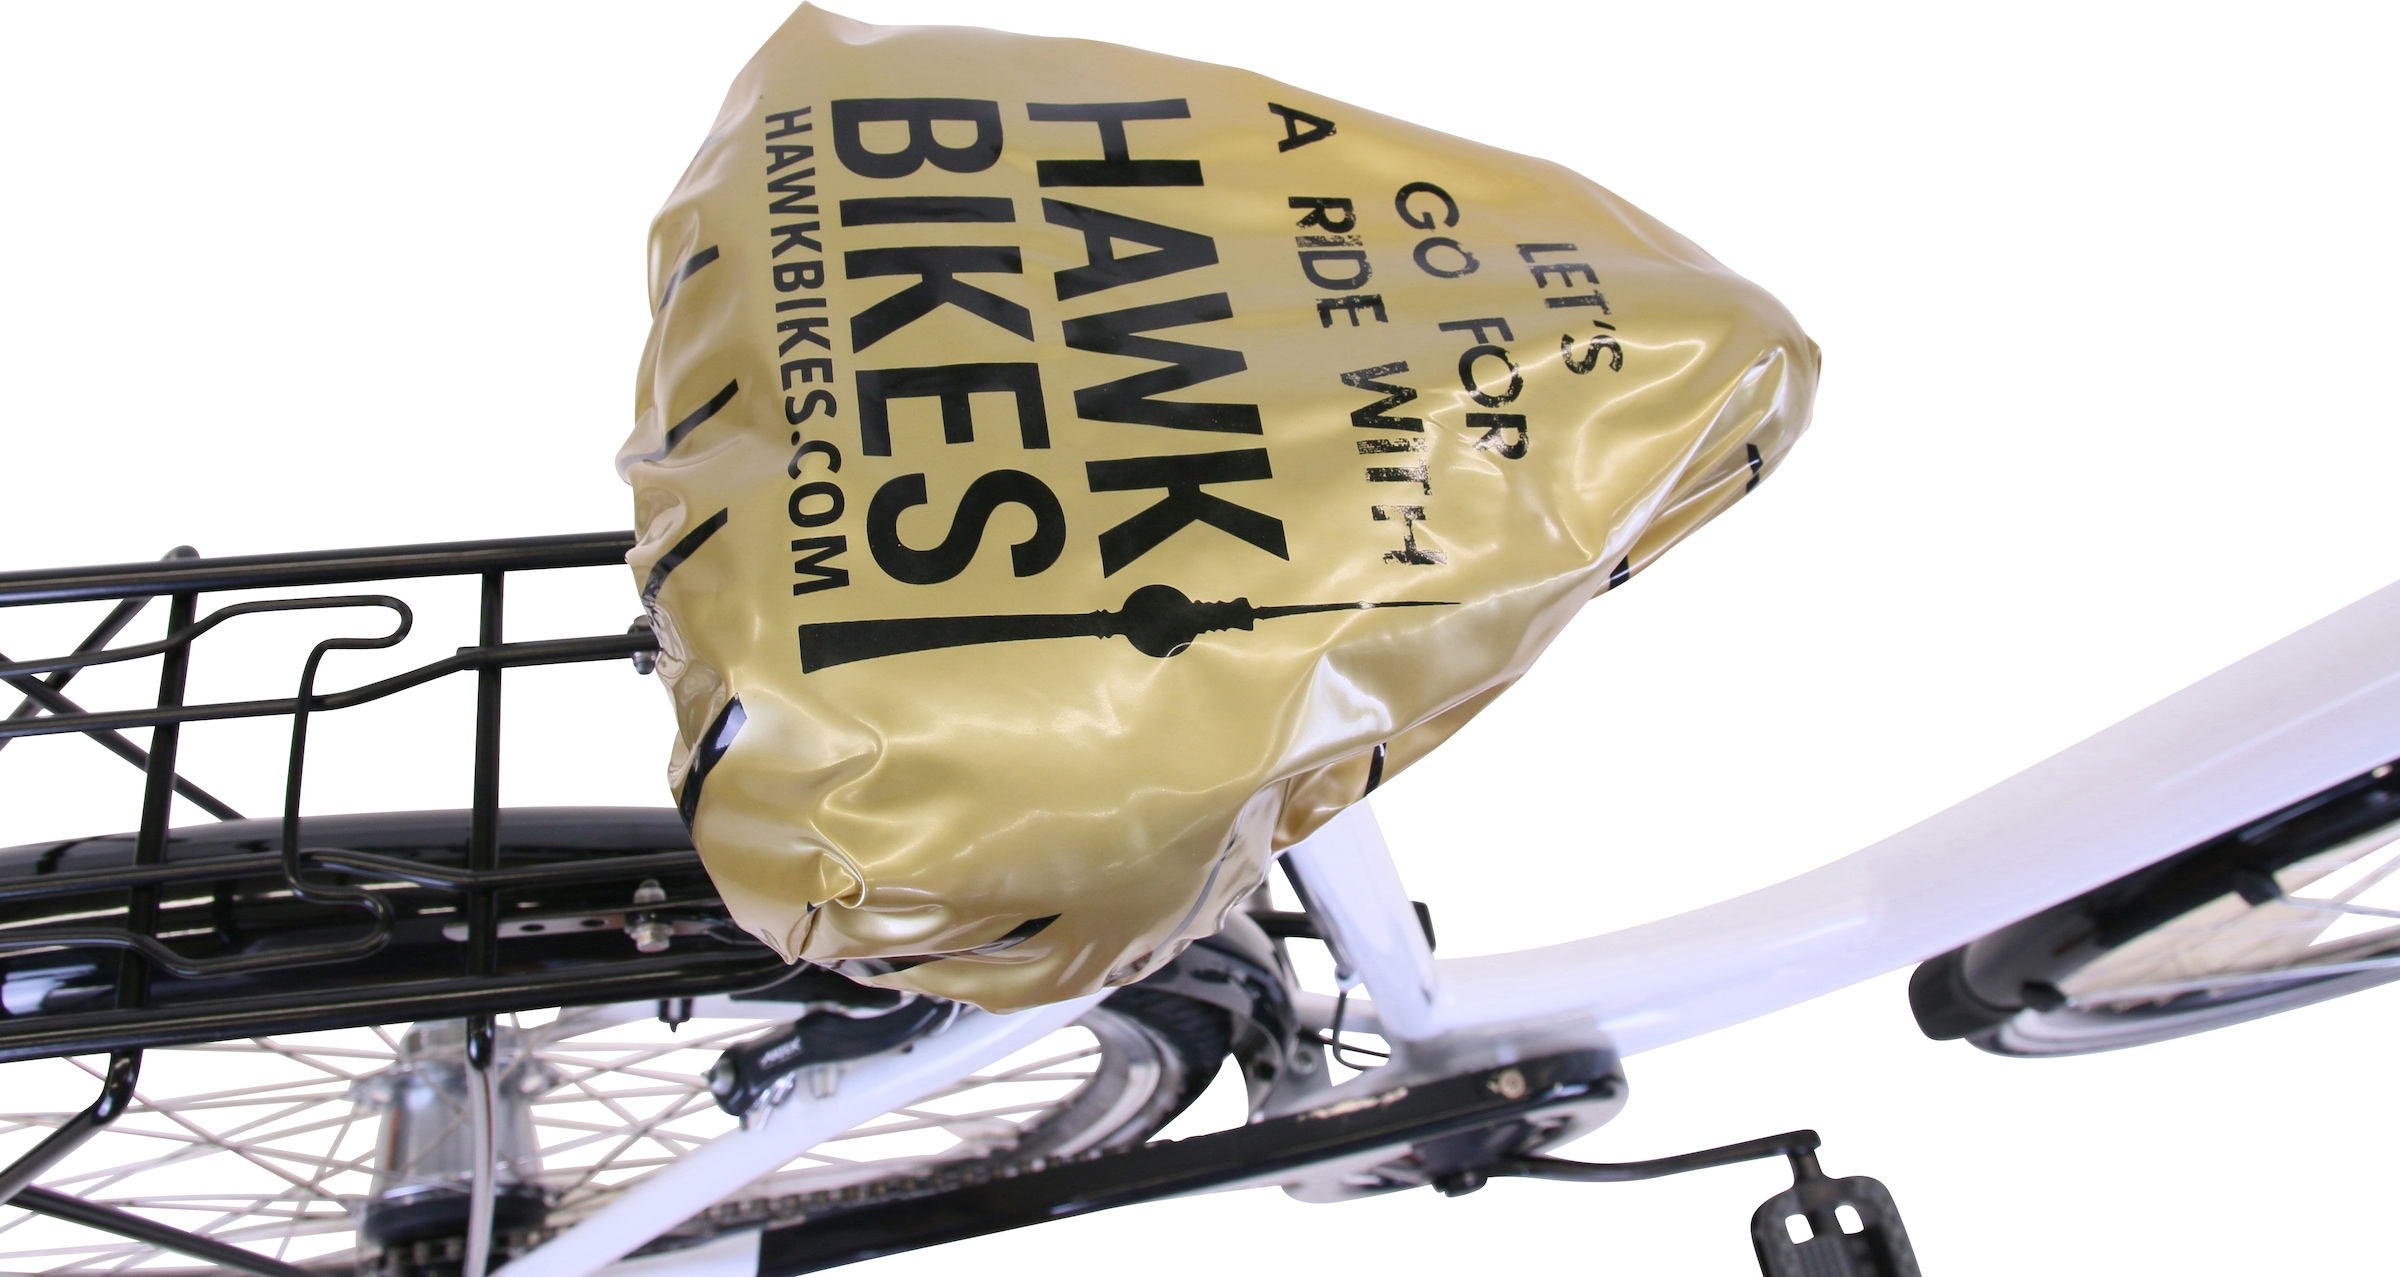 HAWK Bikes Cityrad »HAWK City Wave Deluxe Plus White«, 7 Gang, Shimano, Nexus Schaltwerk, für Damen und Herren